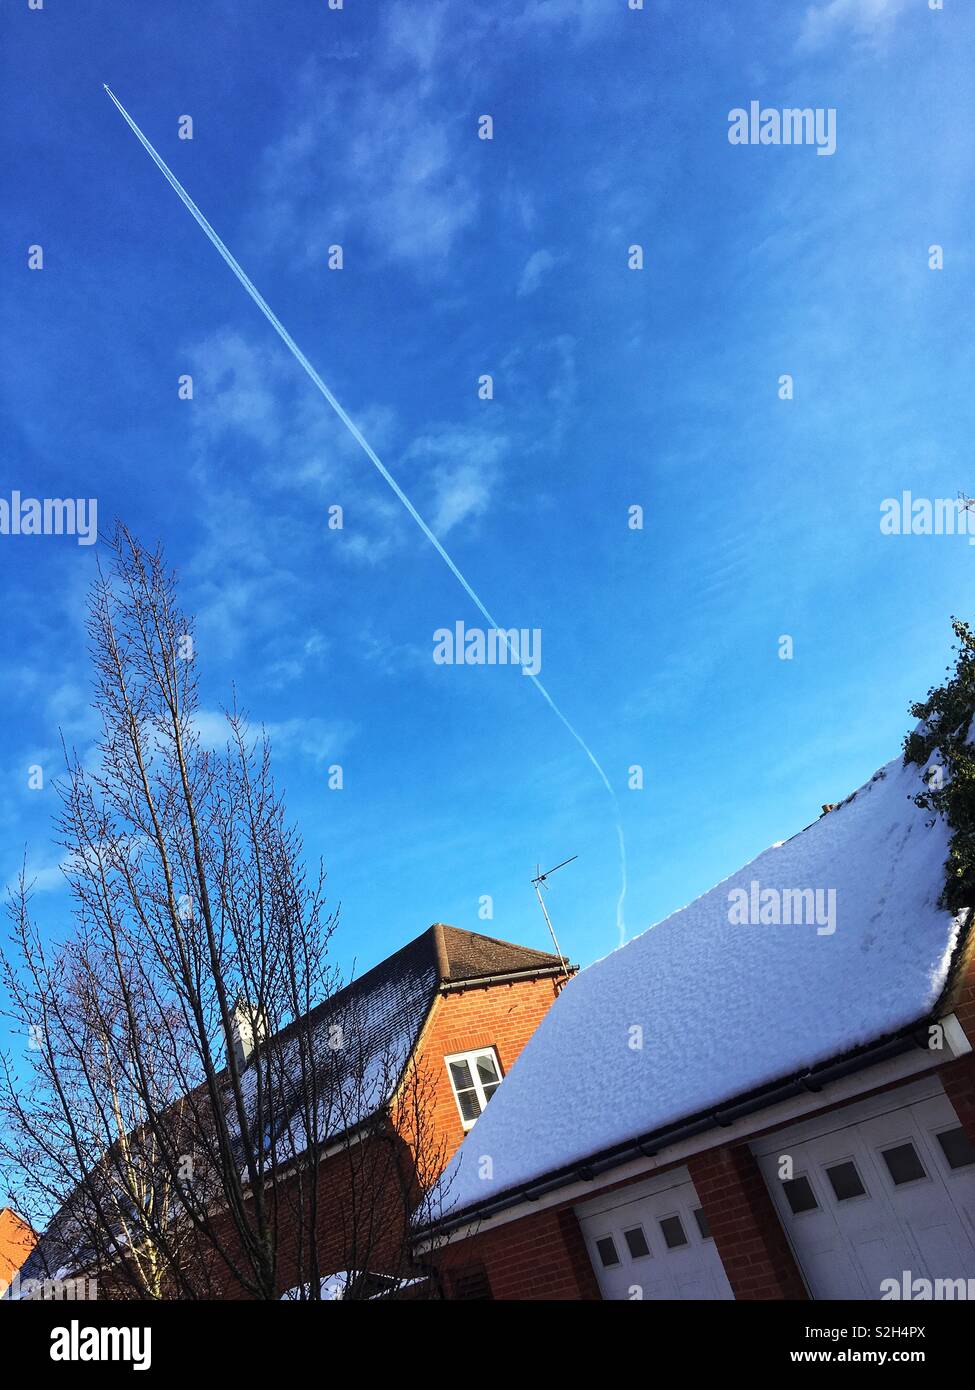 Von schräg Dächer mit Schnee, mit einer hohen Ebene mit diagonalen Dampf Zug in einem blauen Himmel. Kopieren Sie Platz. Stockfoto